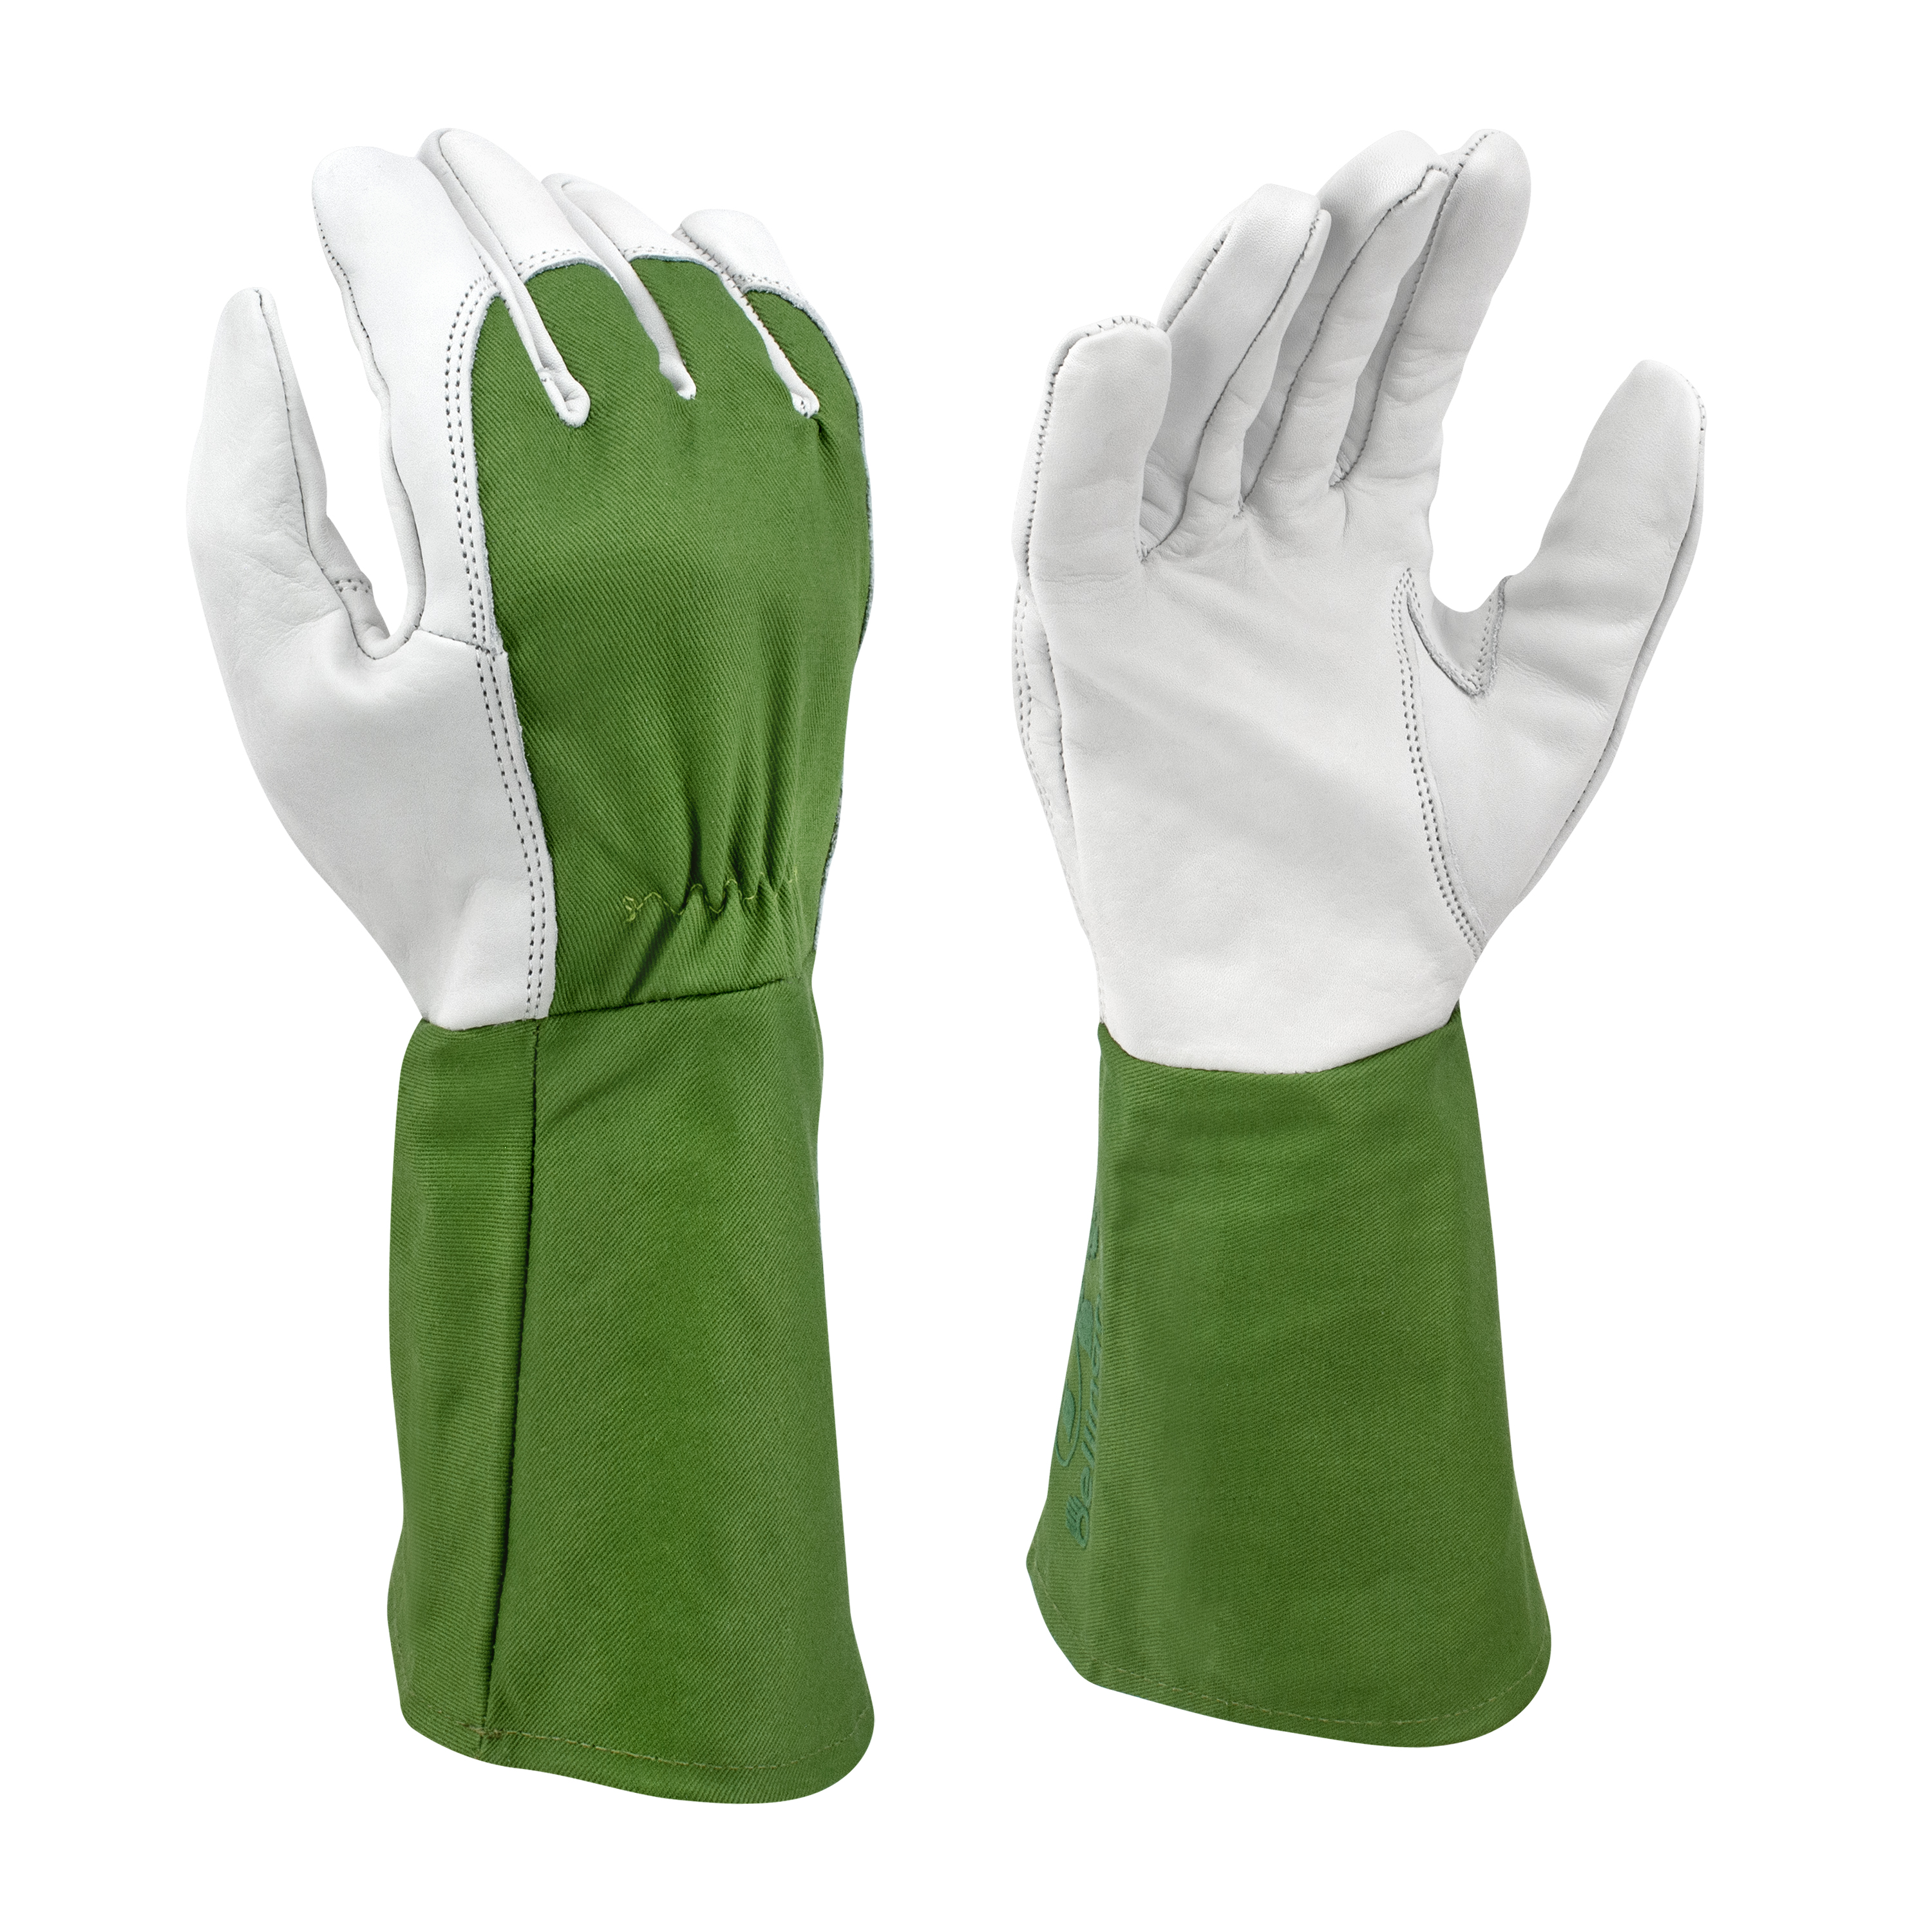 Bellingham C7352 Thorn Resistant Gauntlet Gloves